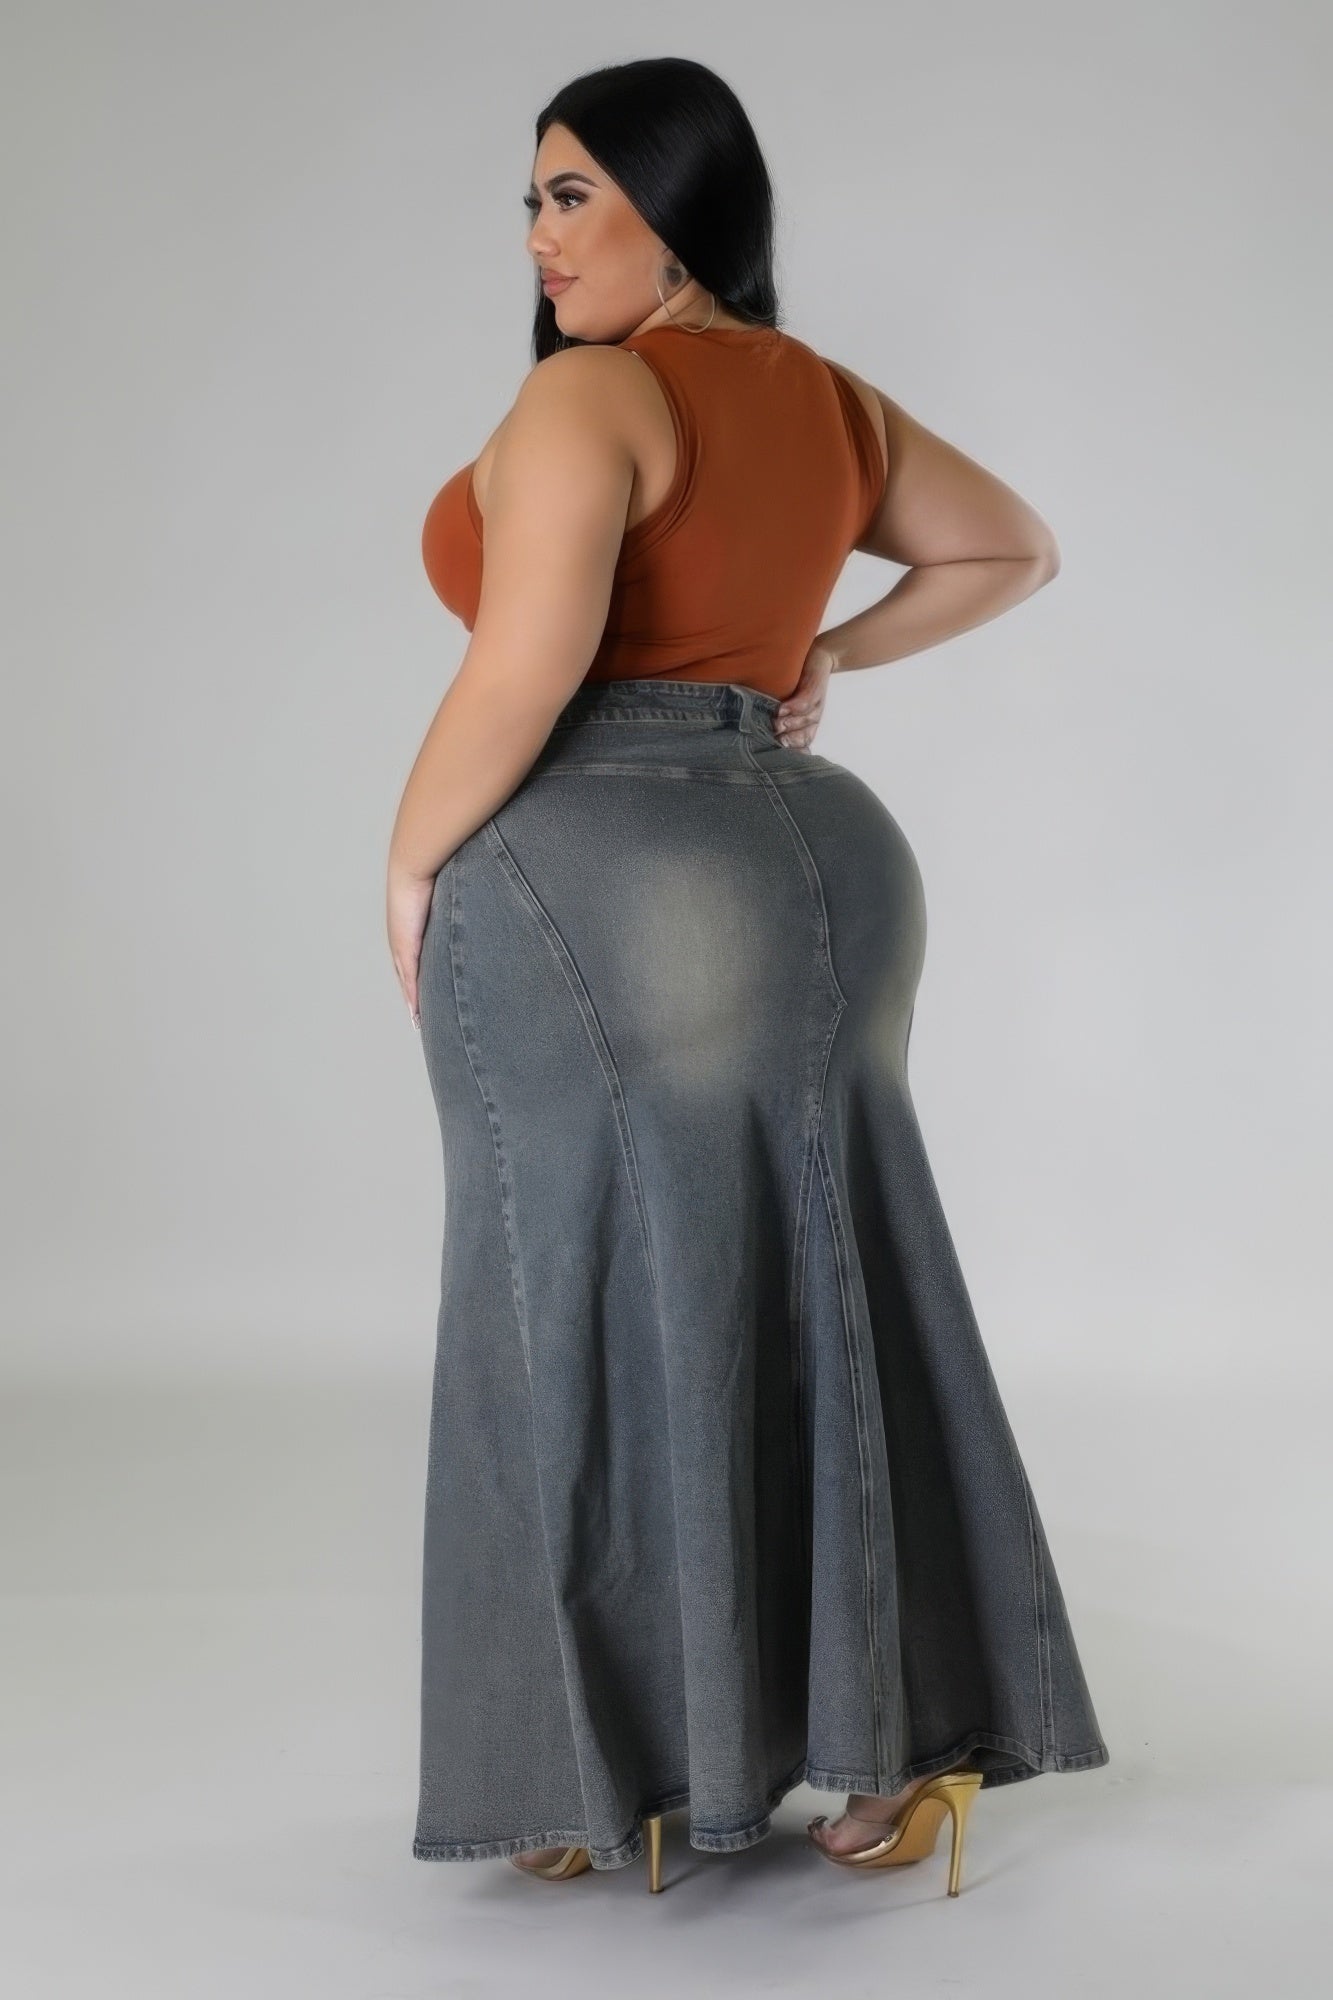 FZ Women's Plus Size High-waisted Stretch Denim Skirt - FZwear